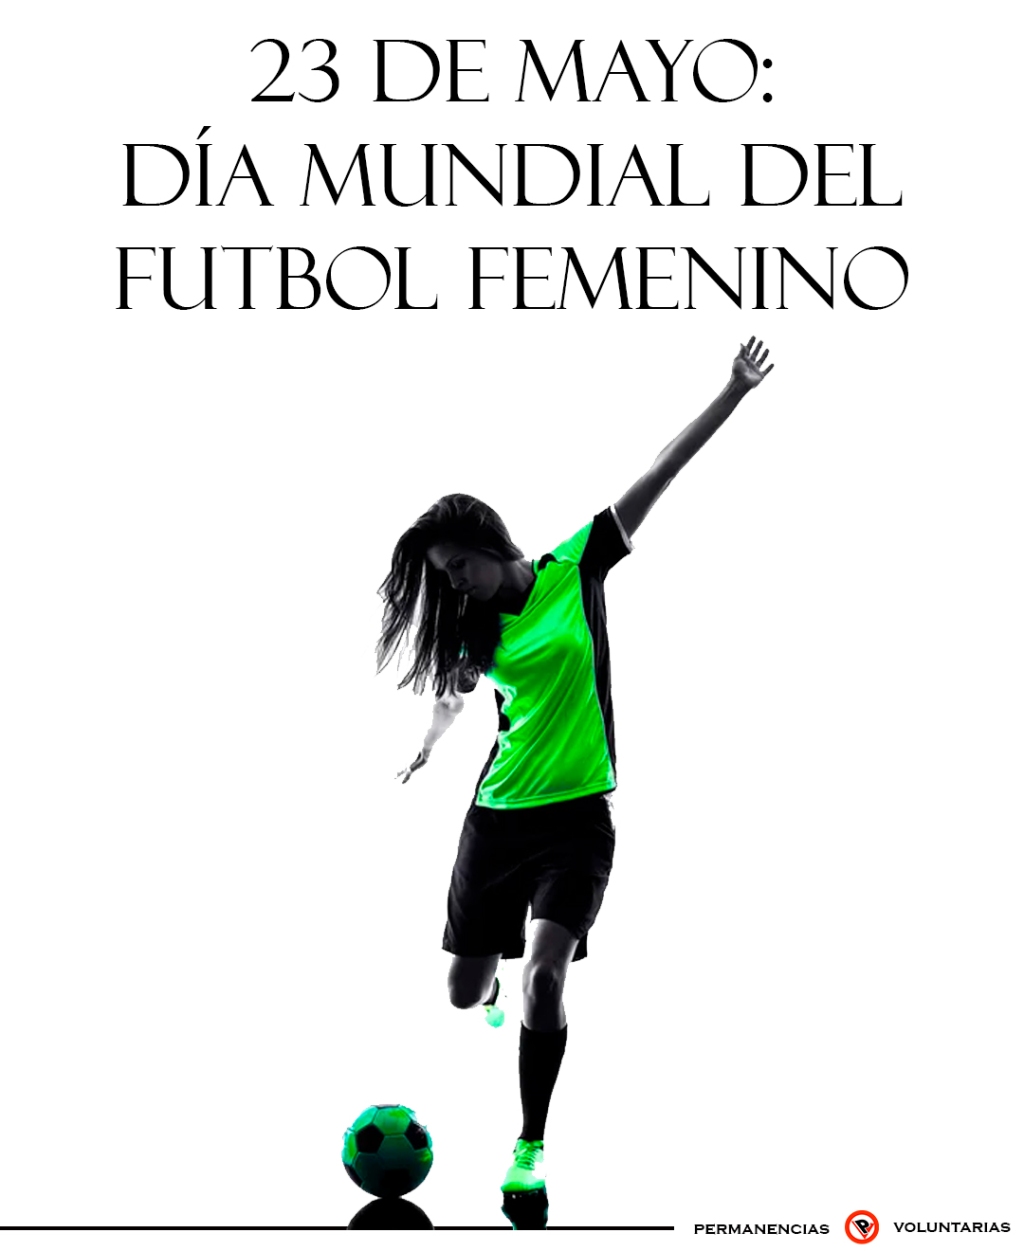 23 de mayo: Día internacional del futbol femenino